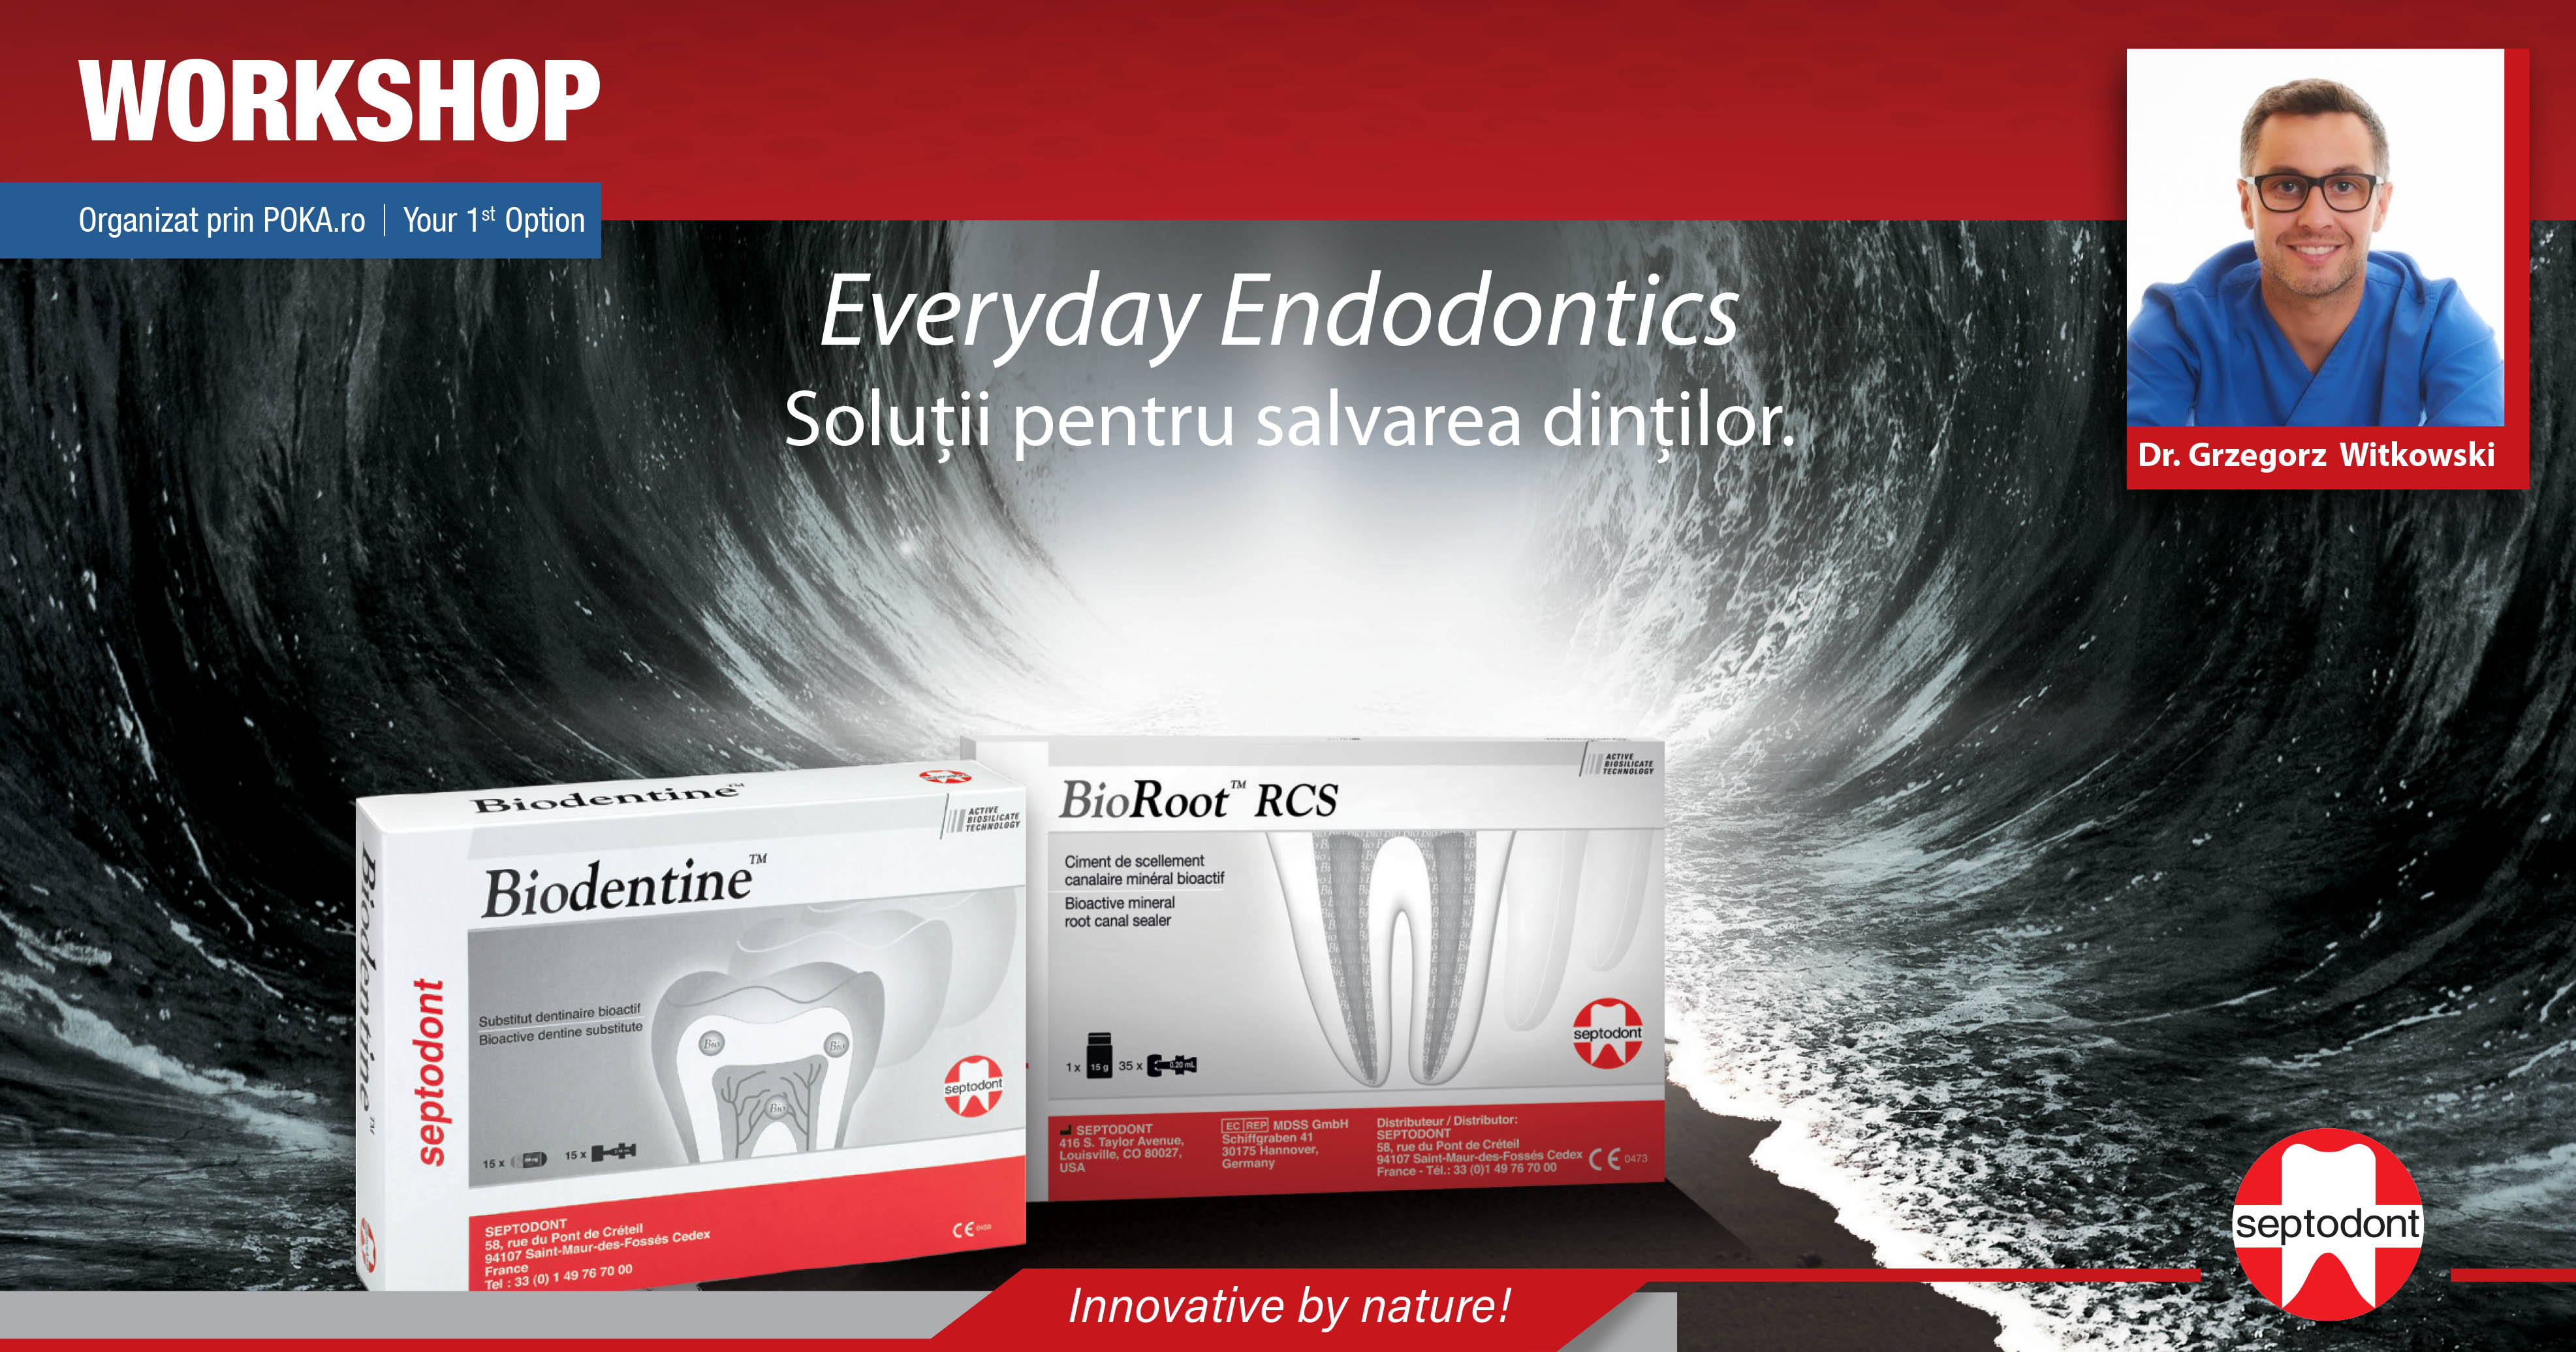 Everyday Endodontics - Solutii pentru salvarea dintilor